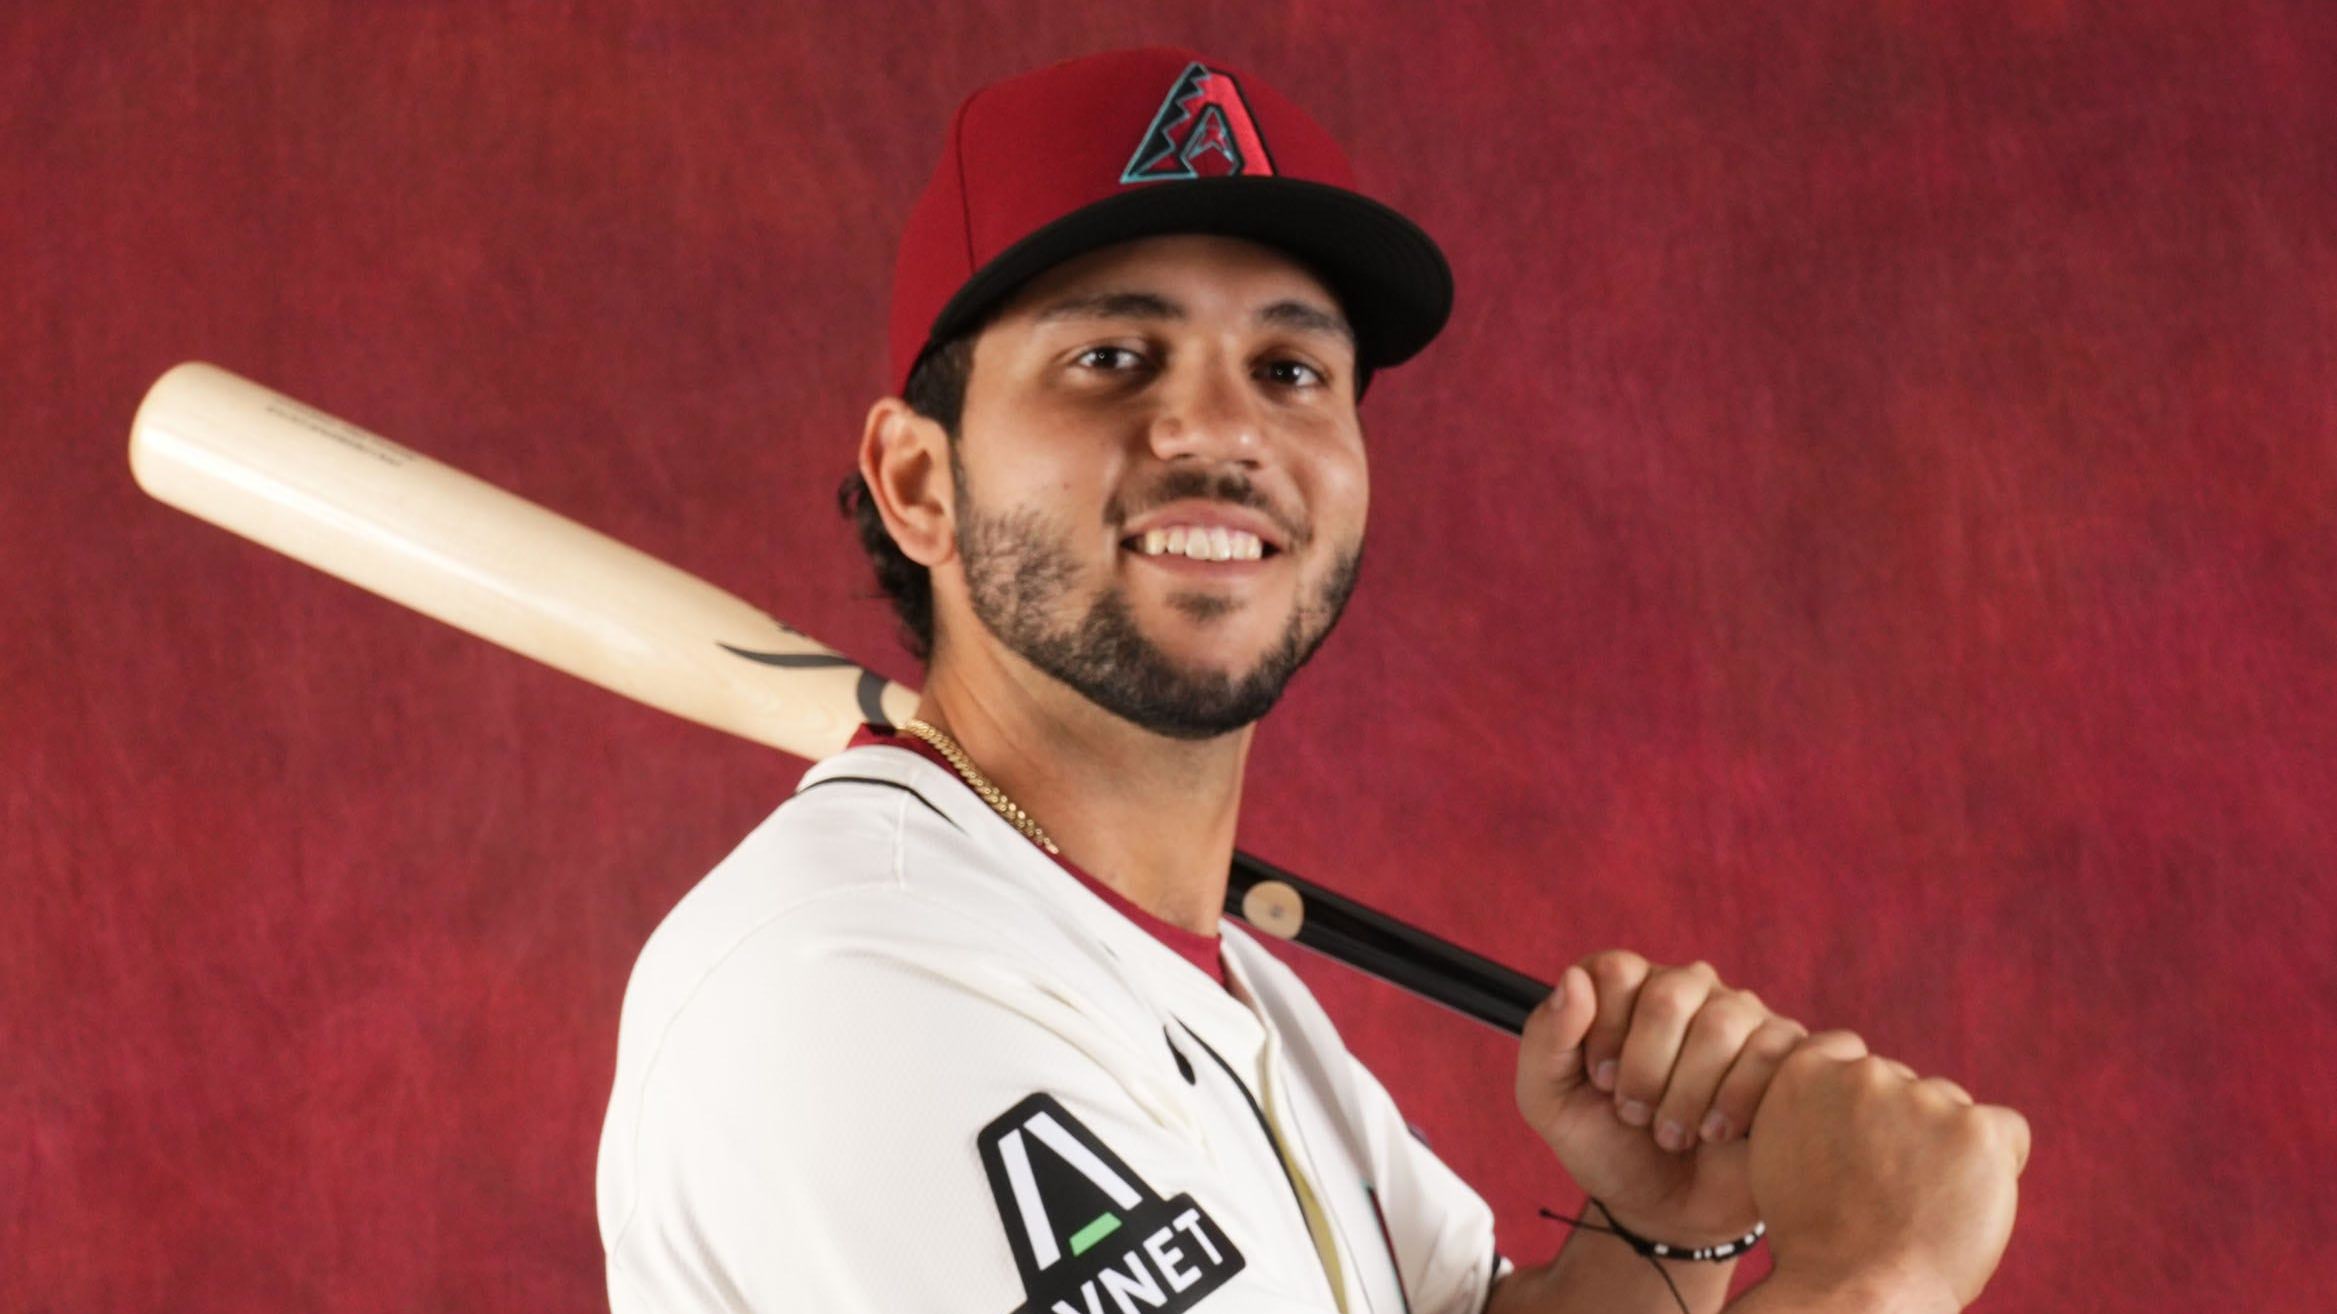 Adrian Del Castillo Shines with Two 100+ MPH Home Runs in Reno Aces Win